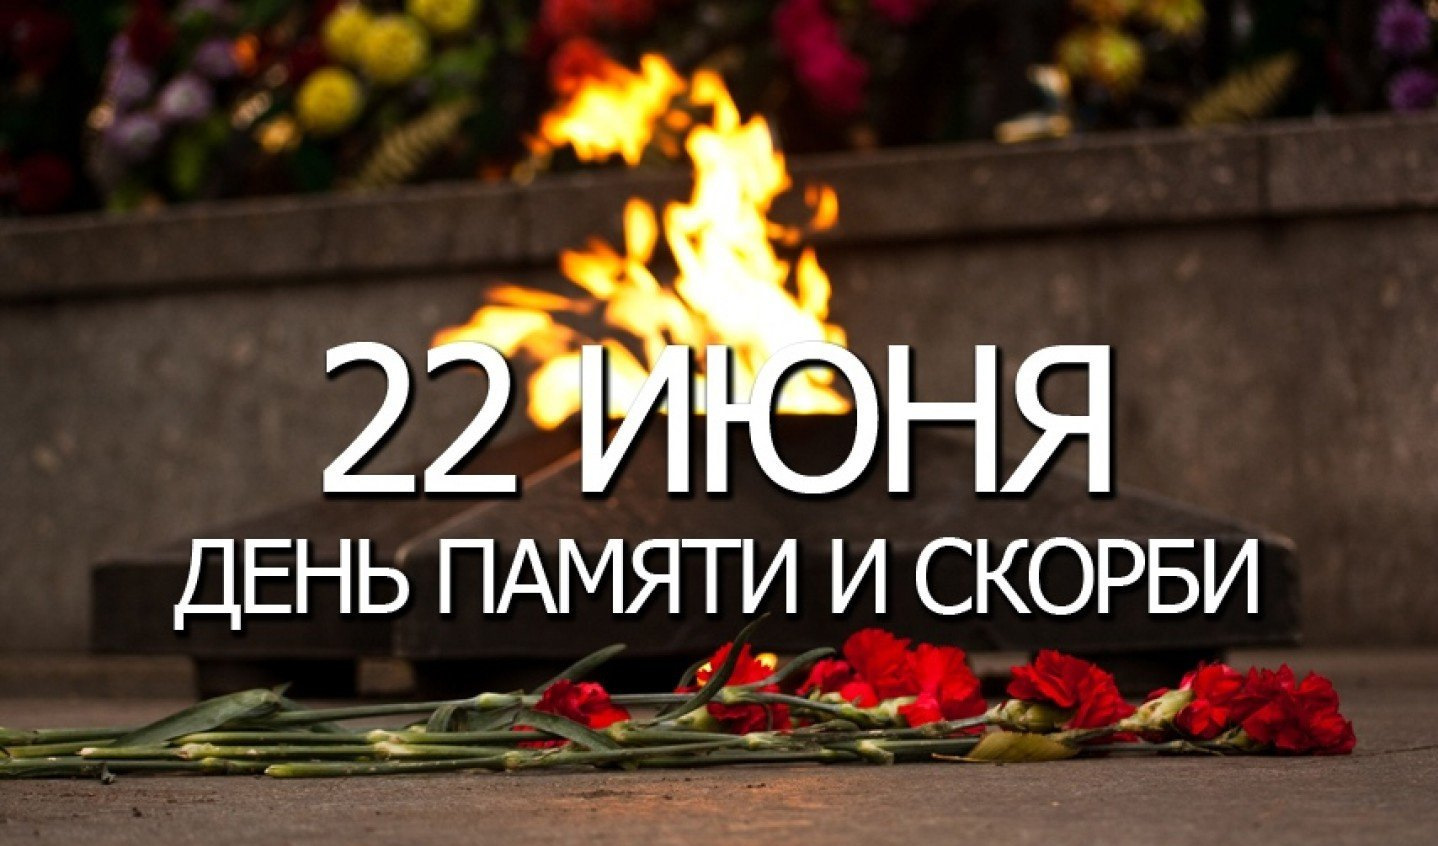 22 июня дети. День памяти и скорби. 22 Июня день памяти. День памяти и скорби — день начала Великой Отечественной войны. День скорби 22 июня.